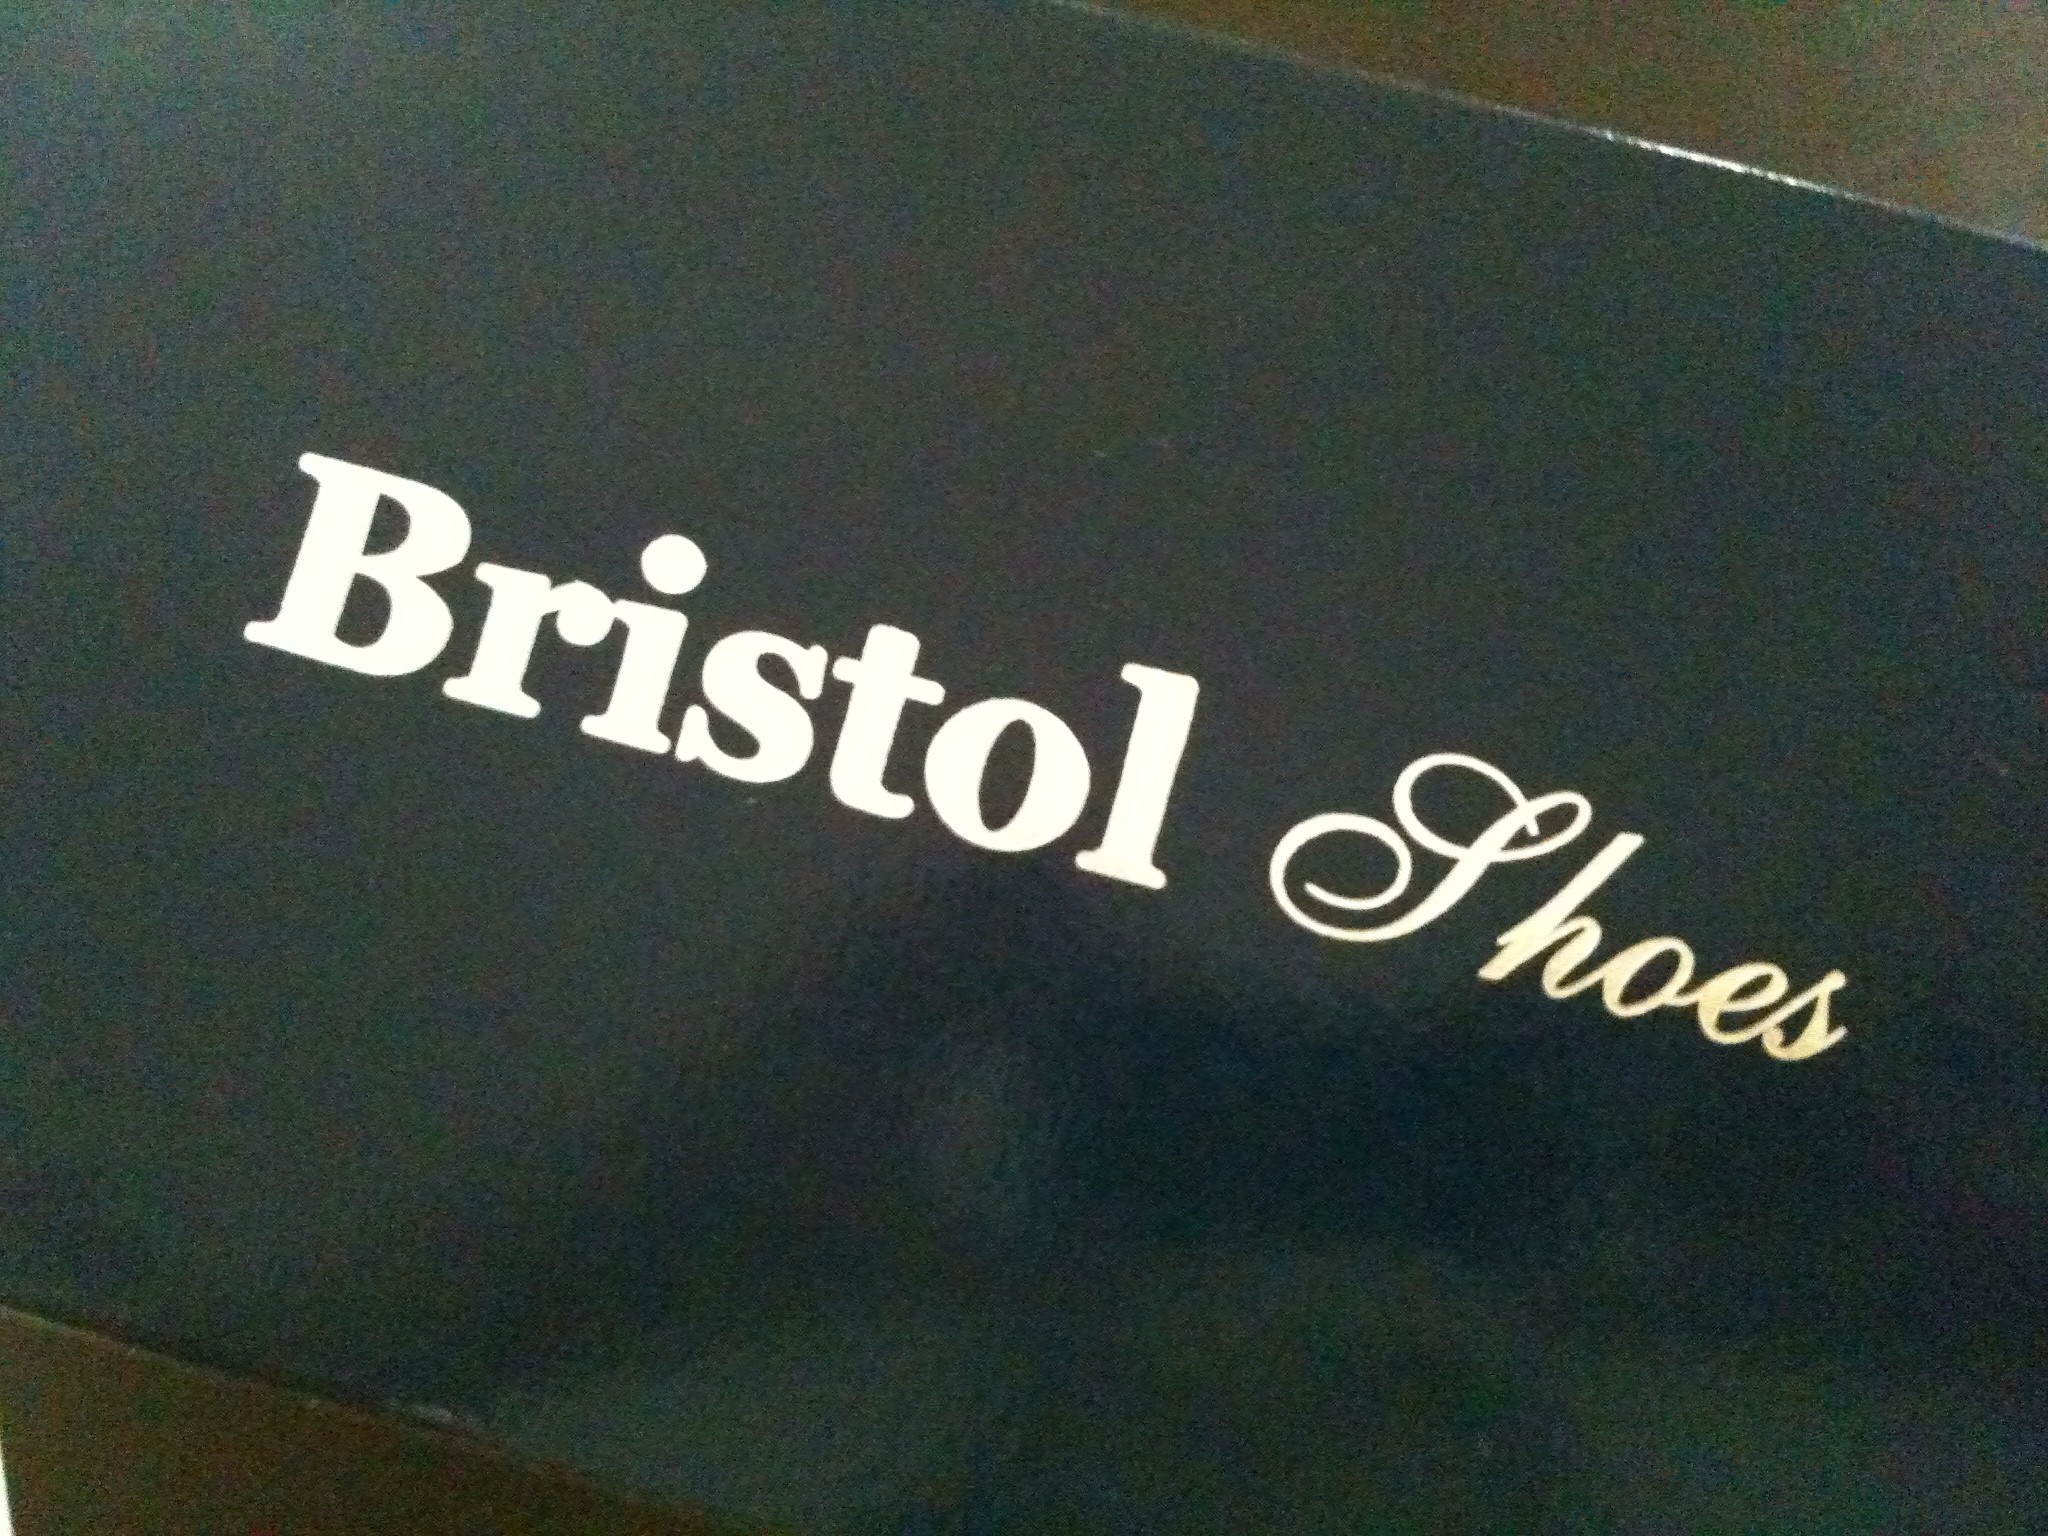 bristol shoes & more